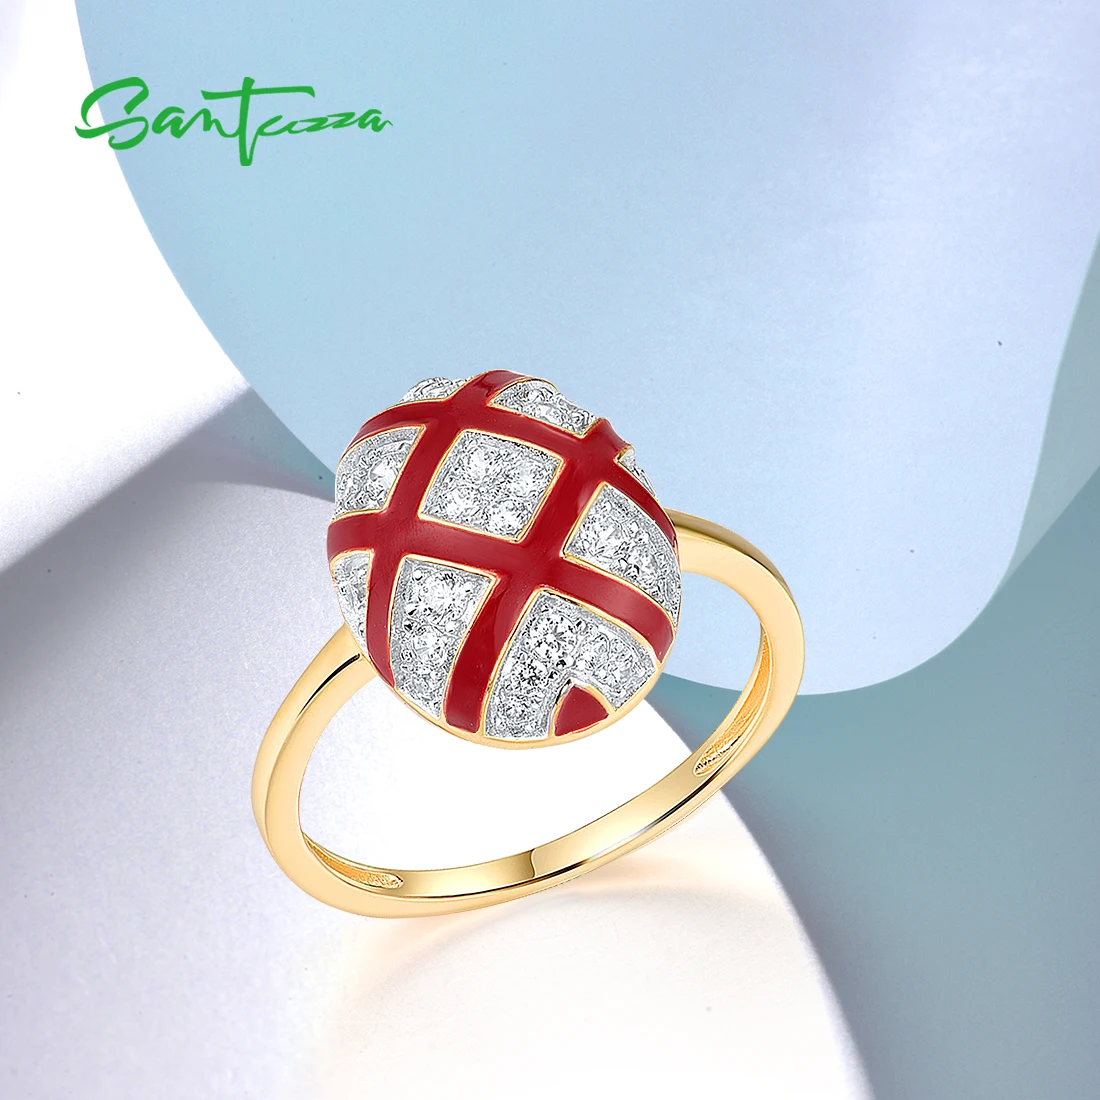 SANTUZZA-anillos de plata de ley 925 pura para mujer, conjunto de joyería fina brillante con circonita blanca, Cruz ovalada roja, esmalte, para compromiso de boda